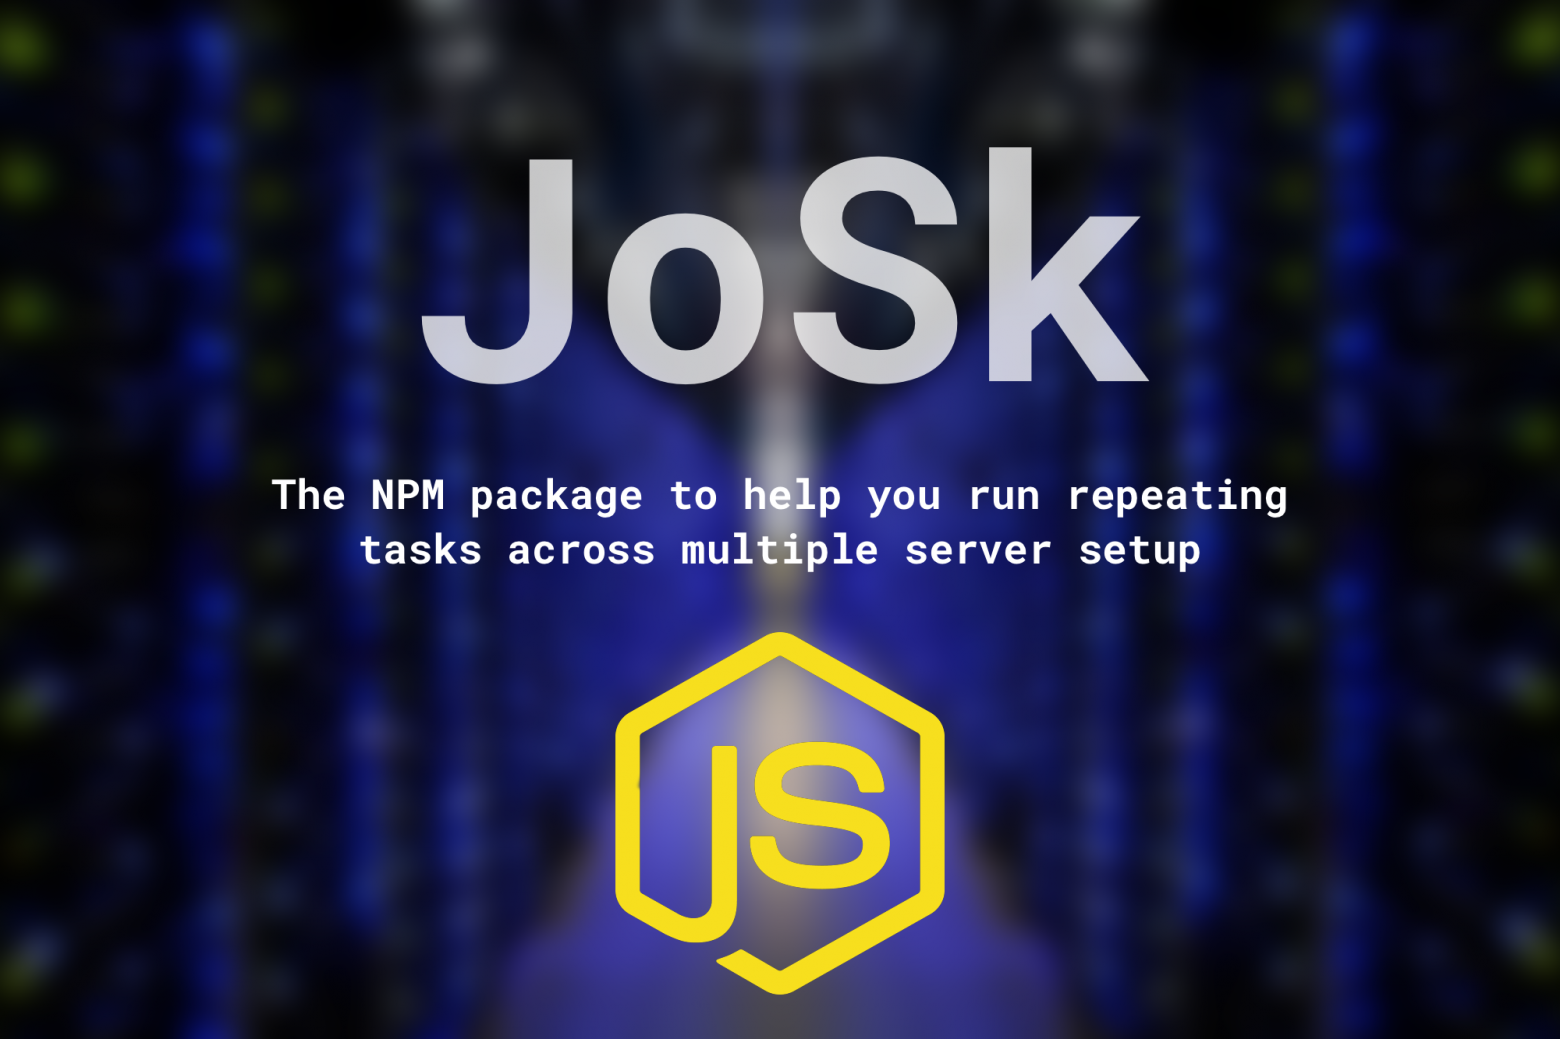 josk NPM package